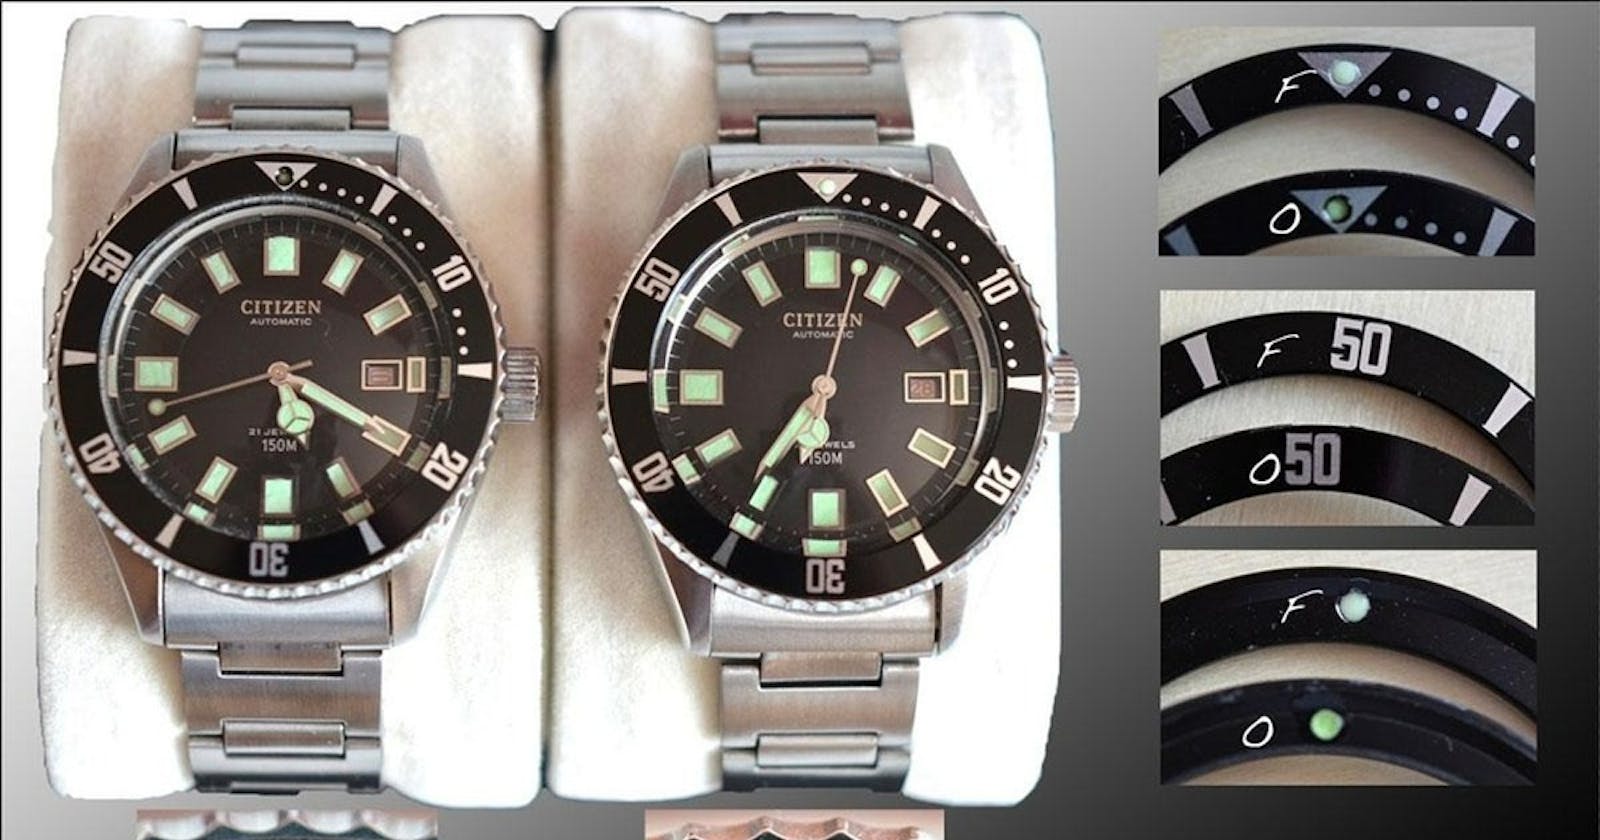 Đồng hồ Citizen Fake giá dưới 2 triệu Trung Quốc là hàng giả